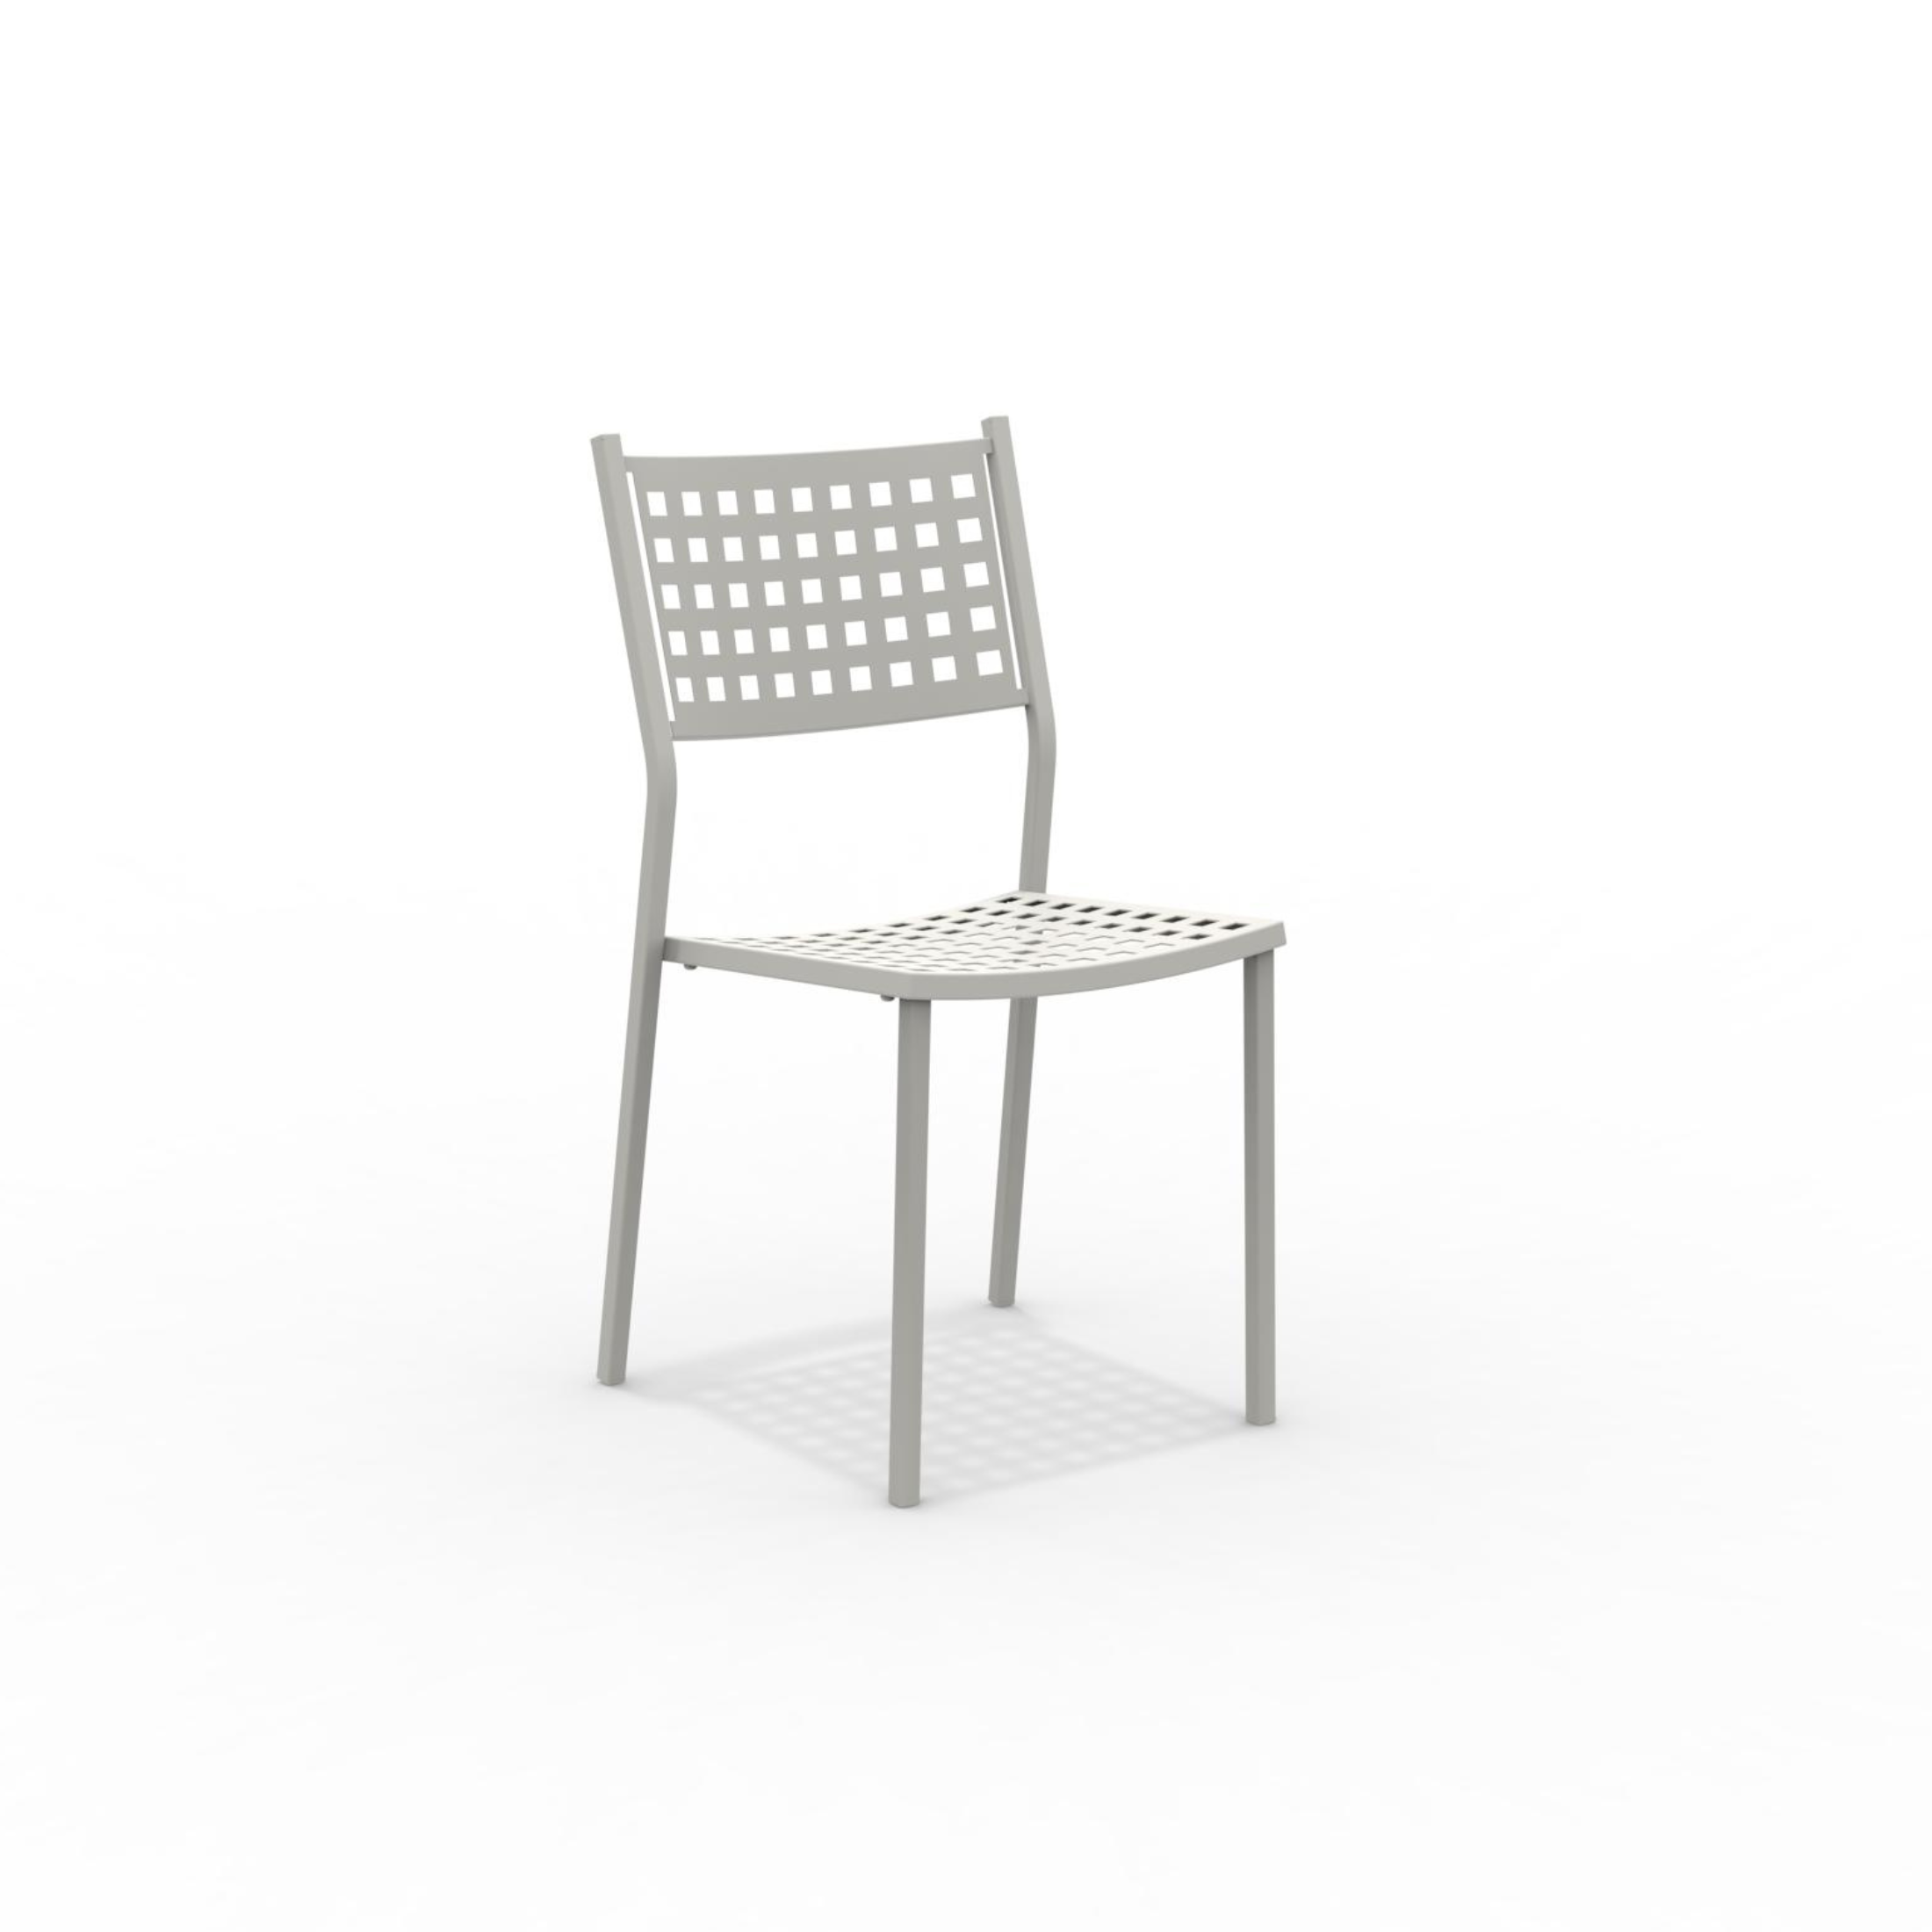 8 pcs Chaise de jardin empilable en métal "Alice" sans accoudoirs 43x48 cm 85h